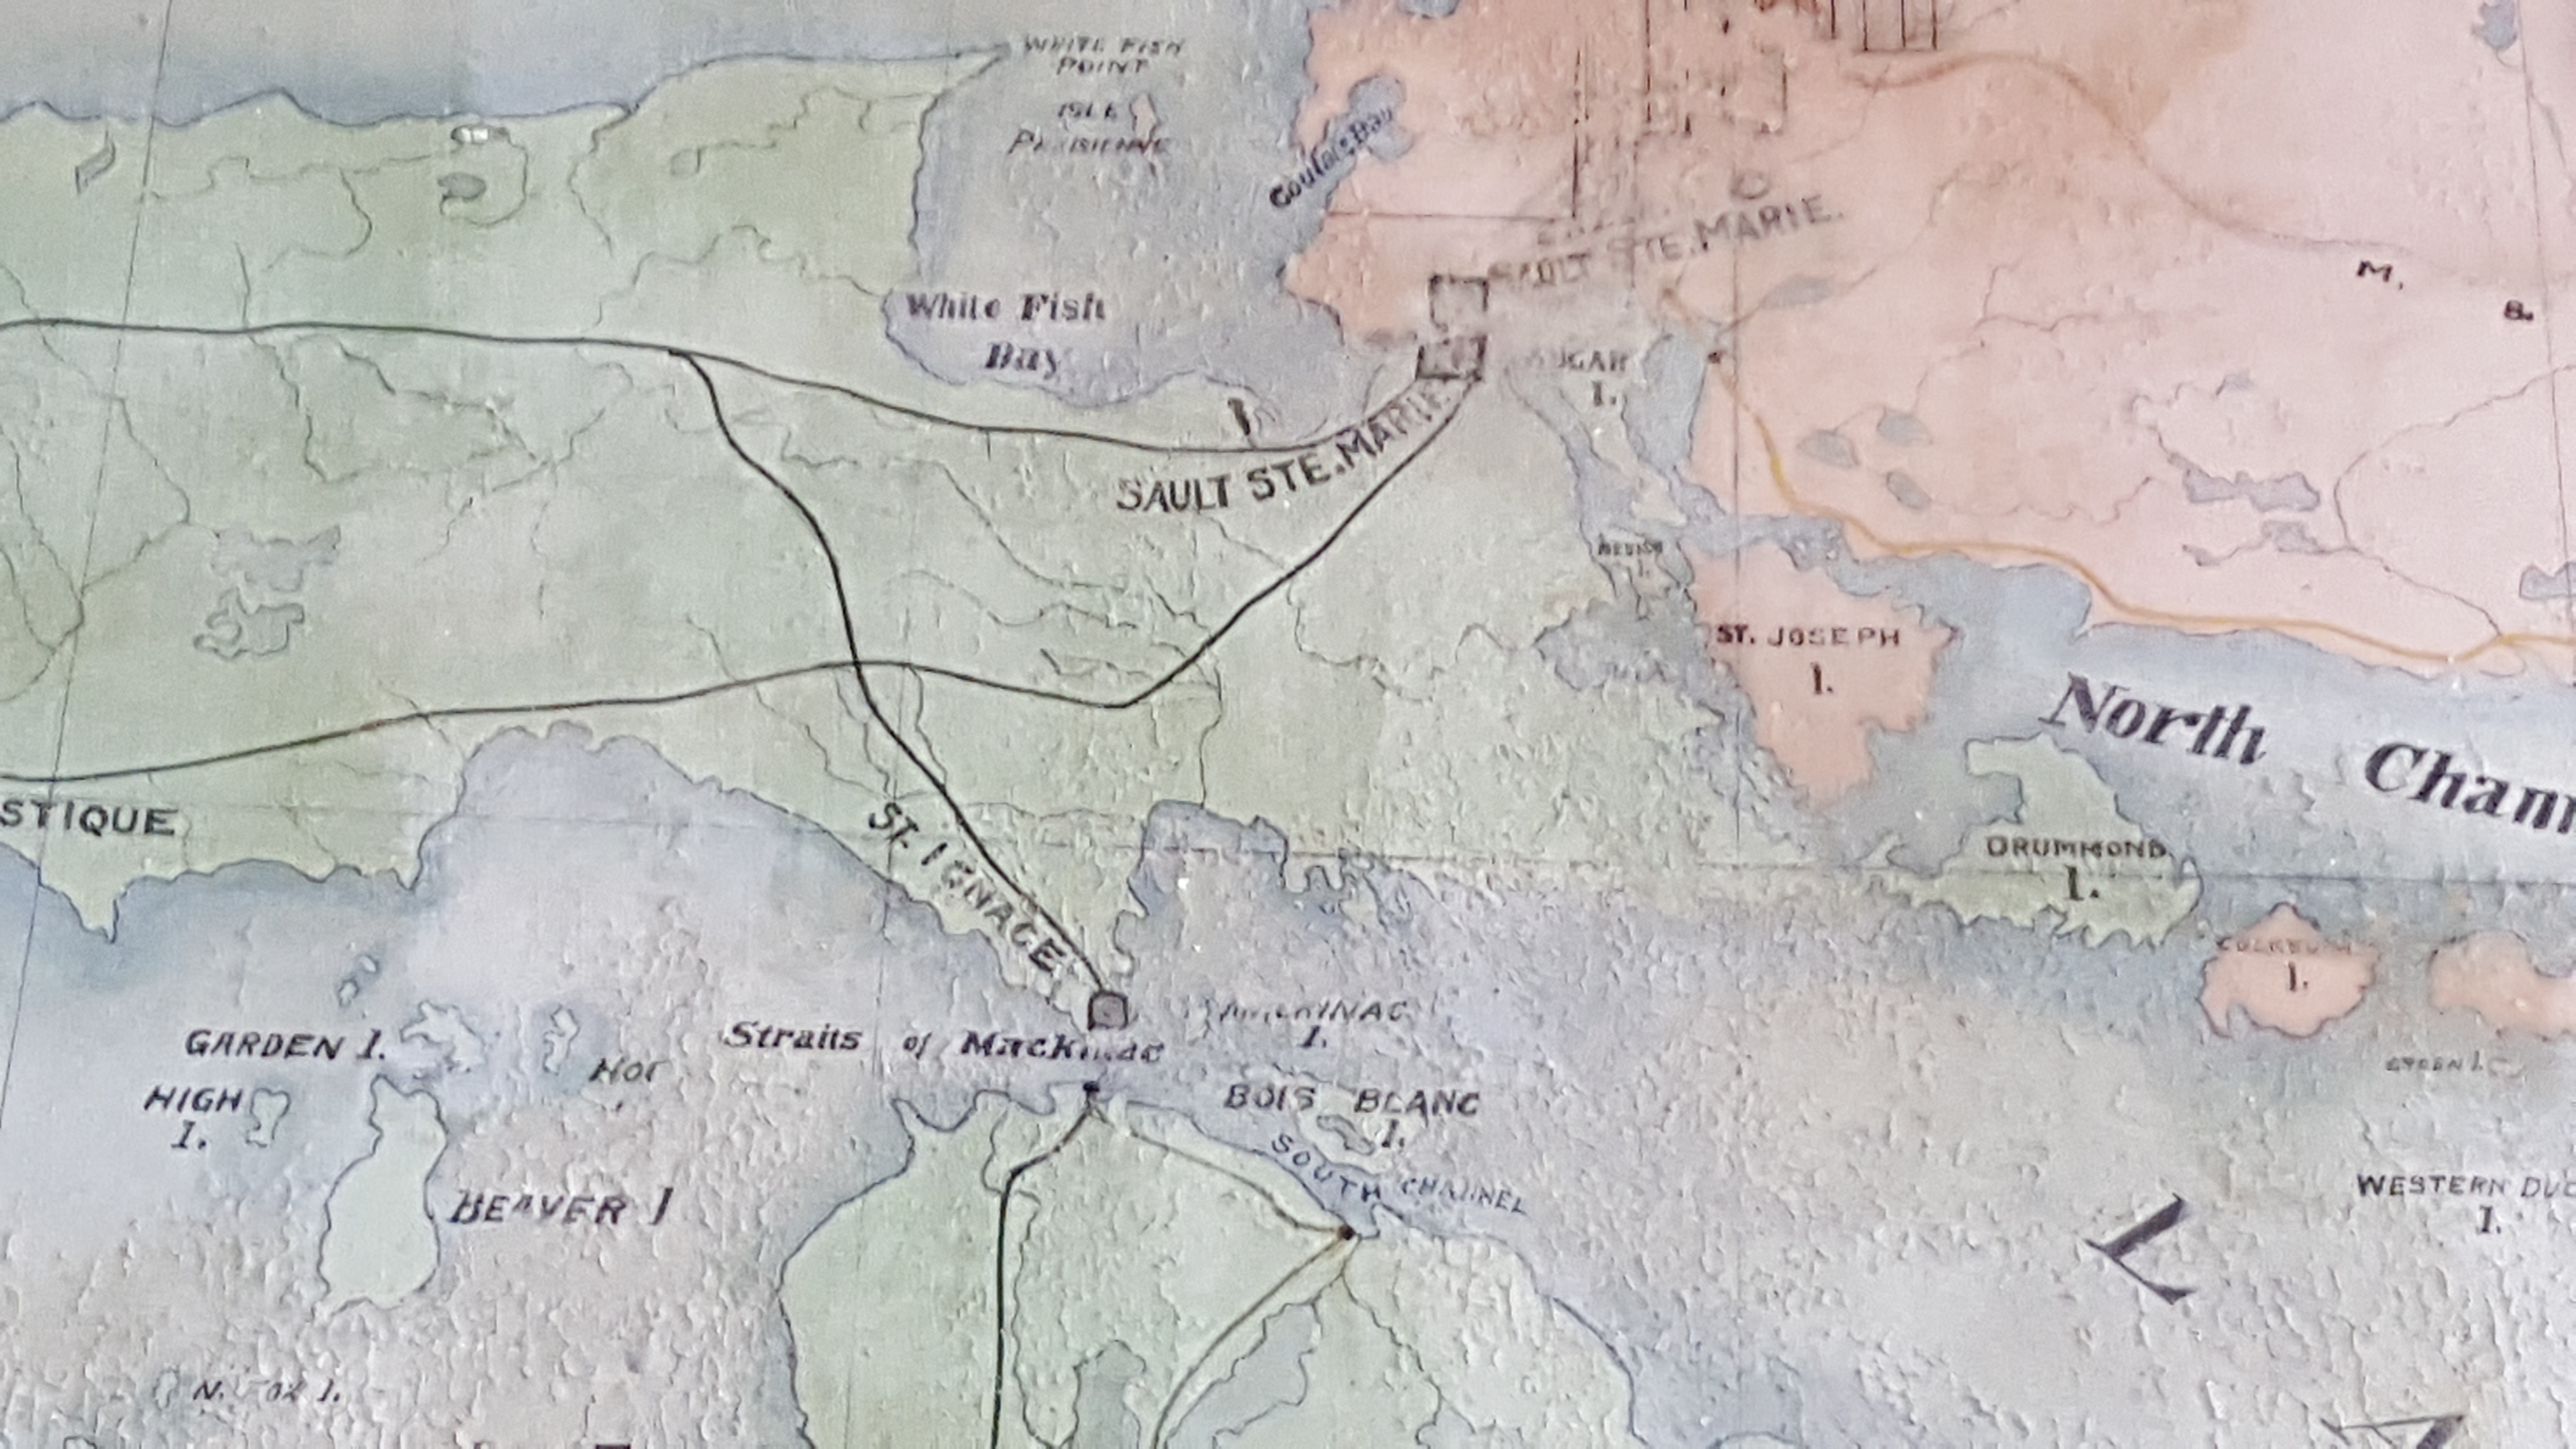 Détails de la carte géographique peinte à la main. Saut-Ste-Marie et le Chenail du Nord sont clairement indiqués. Les lignes noires représentent les voies ferrées et les carrés indiquent des centres d'expédition.